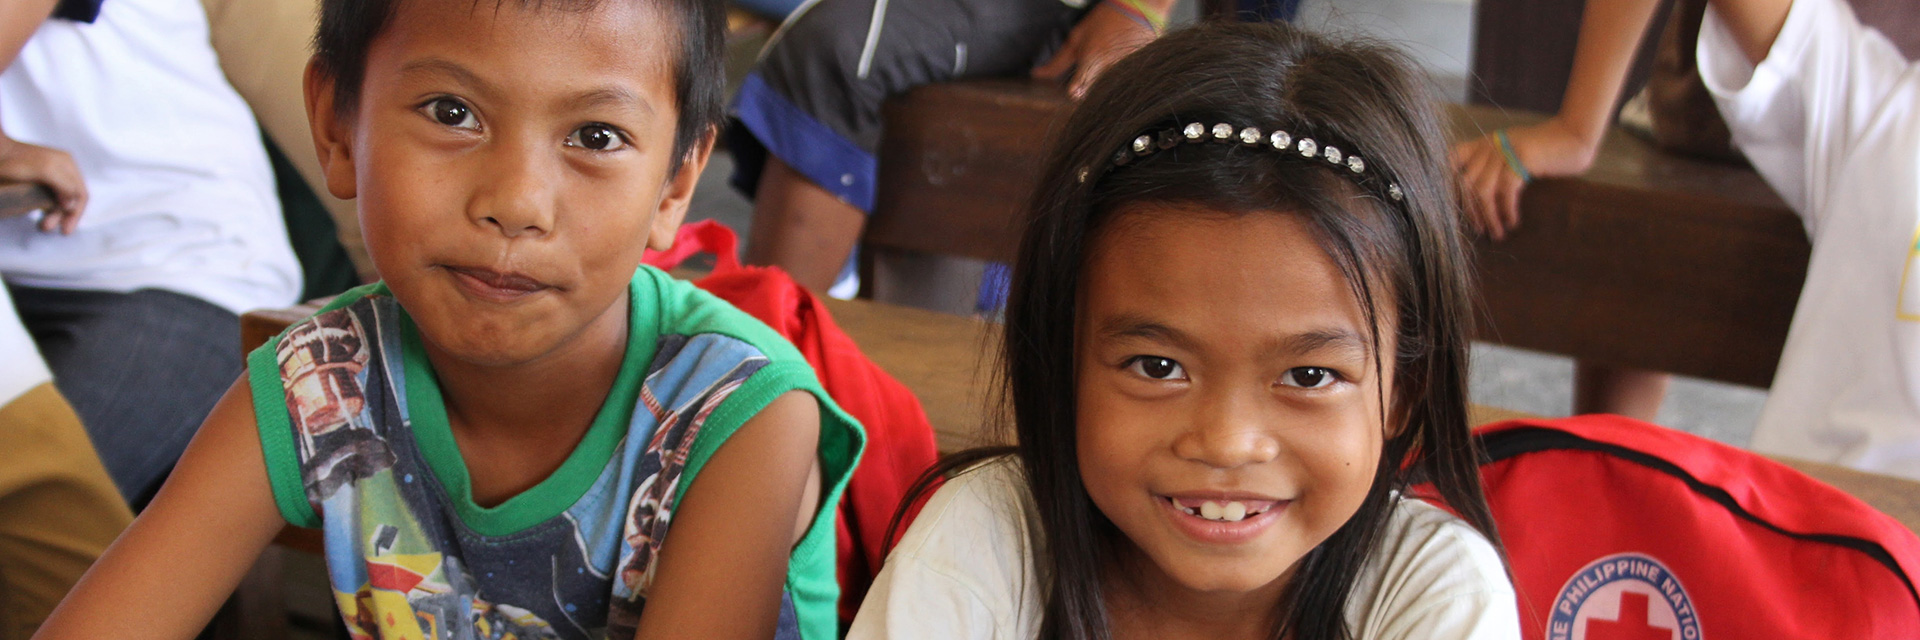 Zwei philippinische Kinder auf einer Schulbank